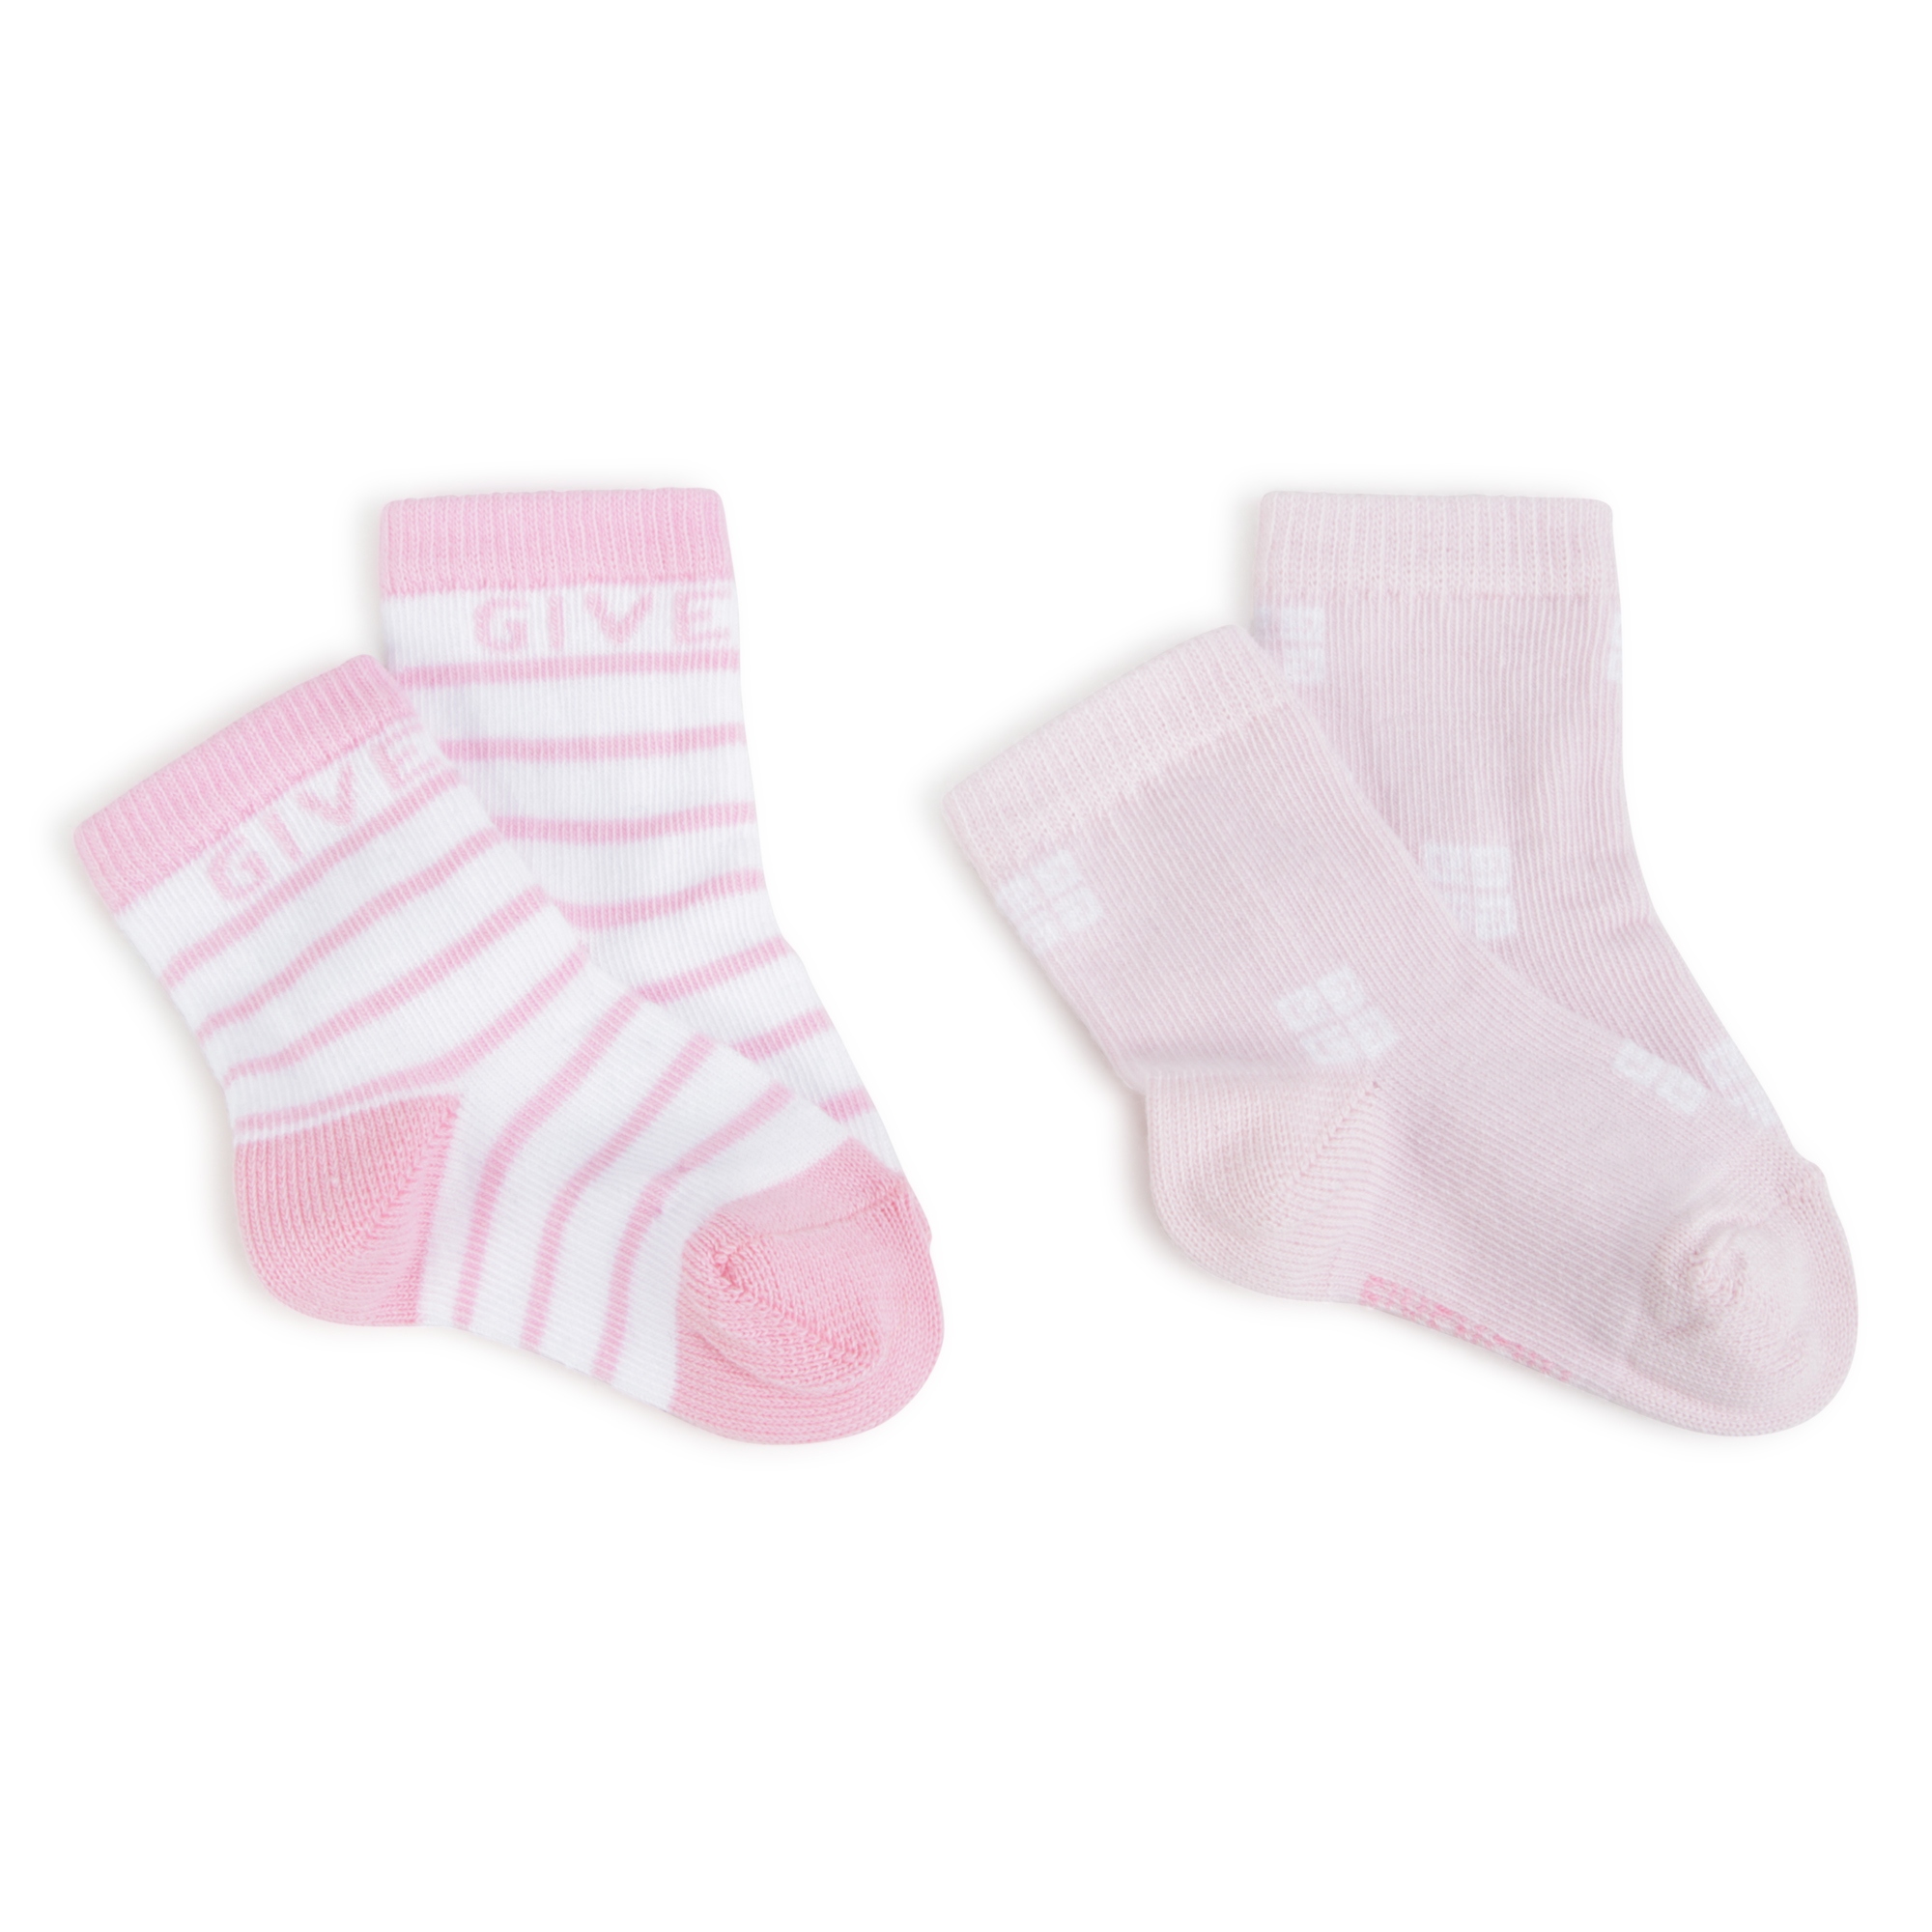 Pack de 2 pares de calcetines GIVENCHY para UNISEXO